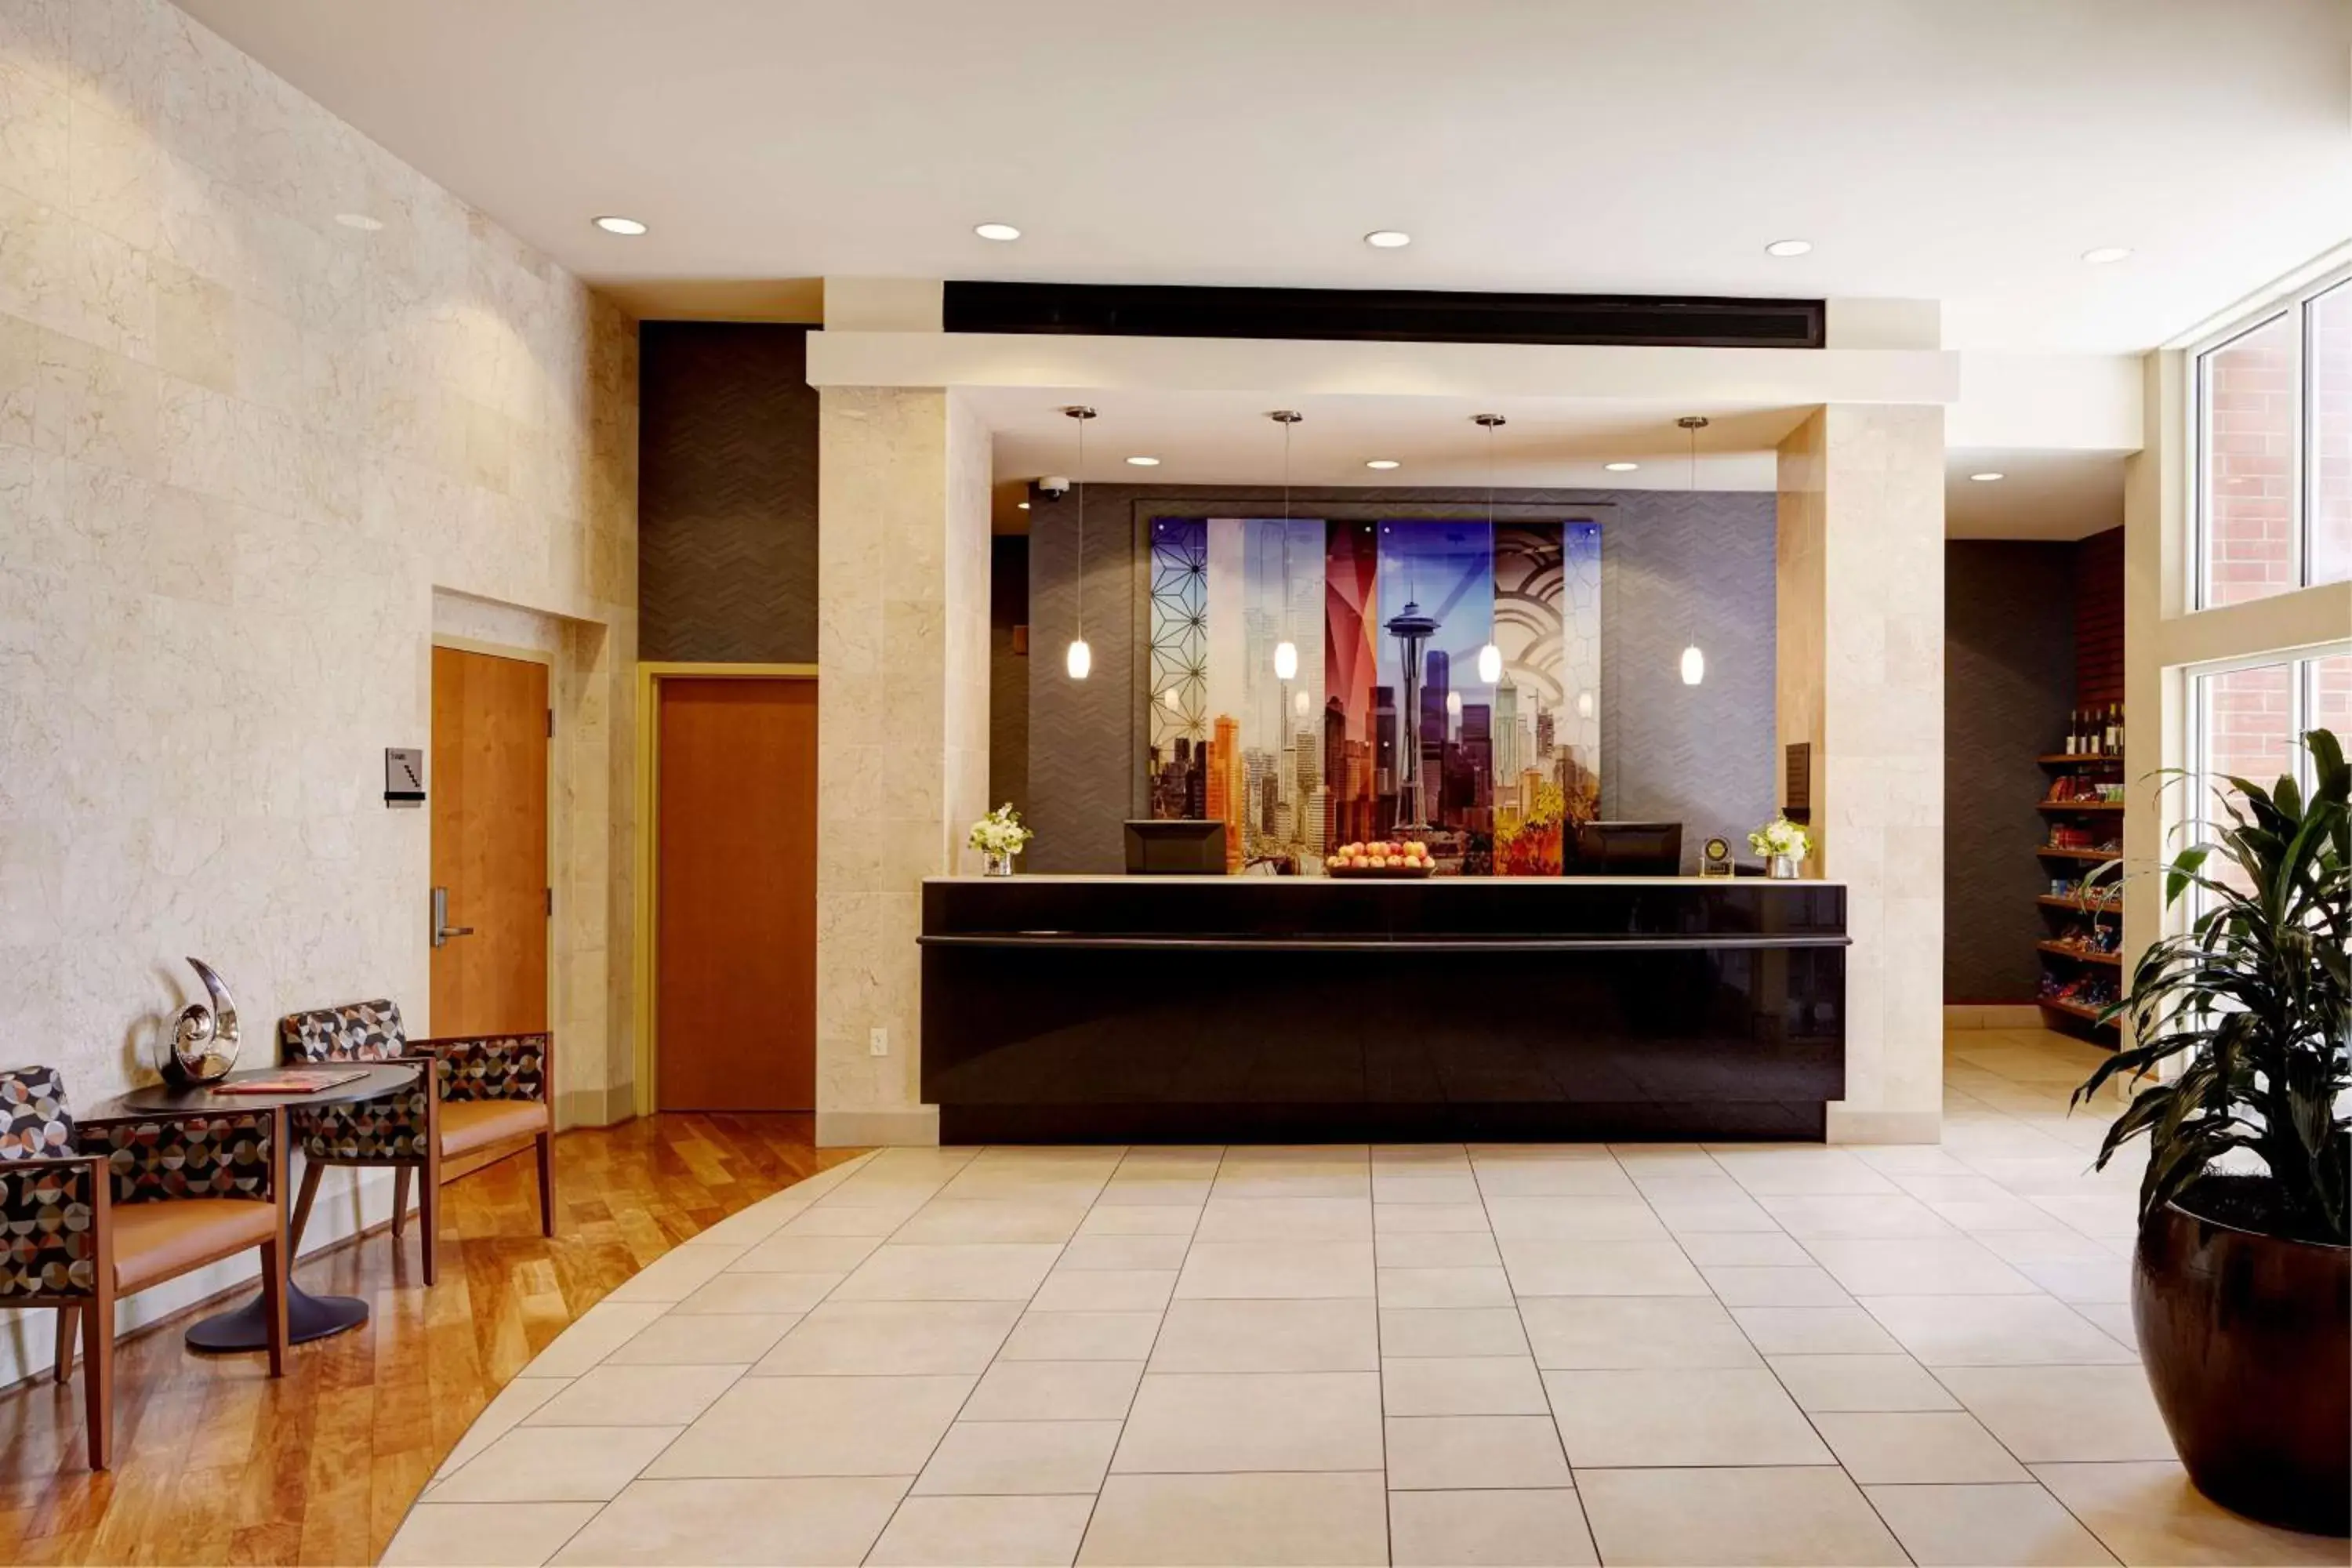 Lobby or reception in Hyatt House Seattle Bellevue